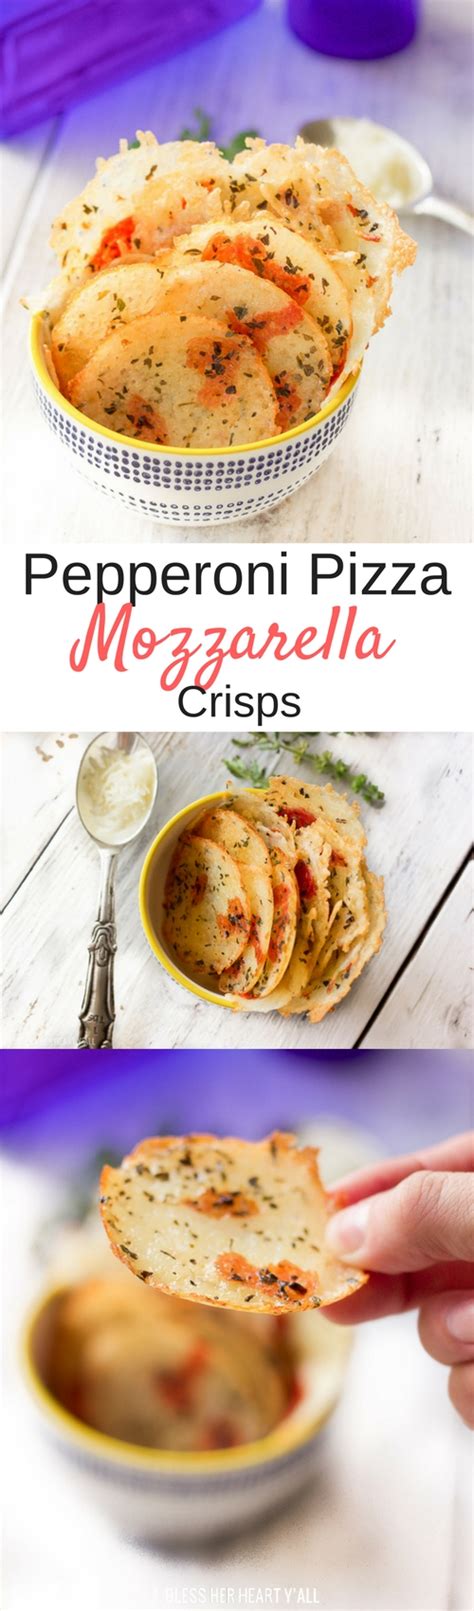 pepperoni-pizza-mozzarella-chips-quick-easy image